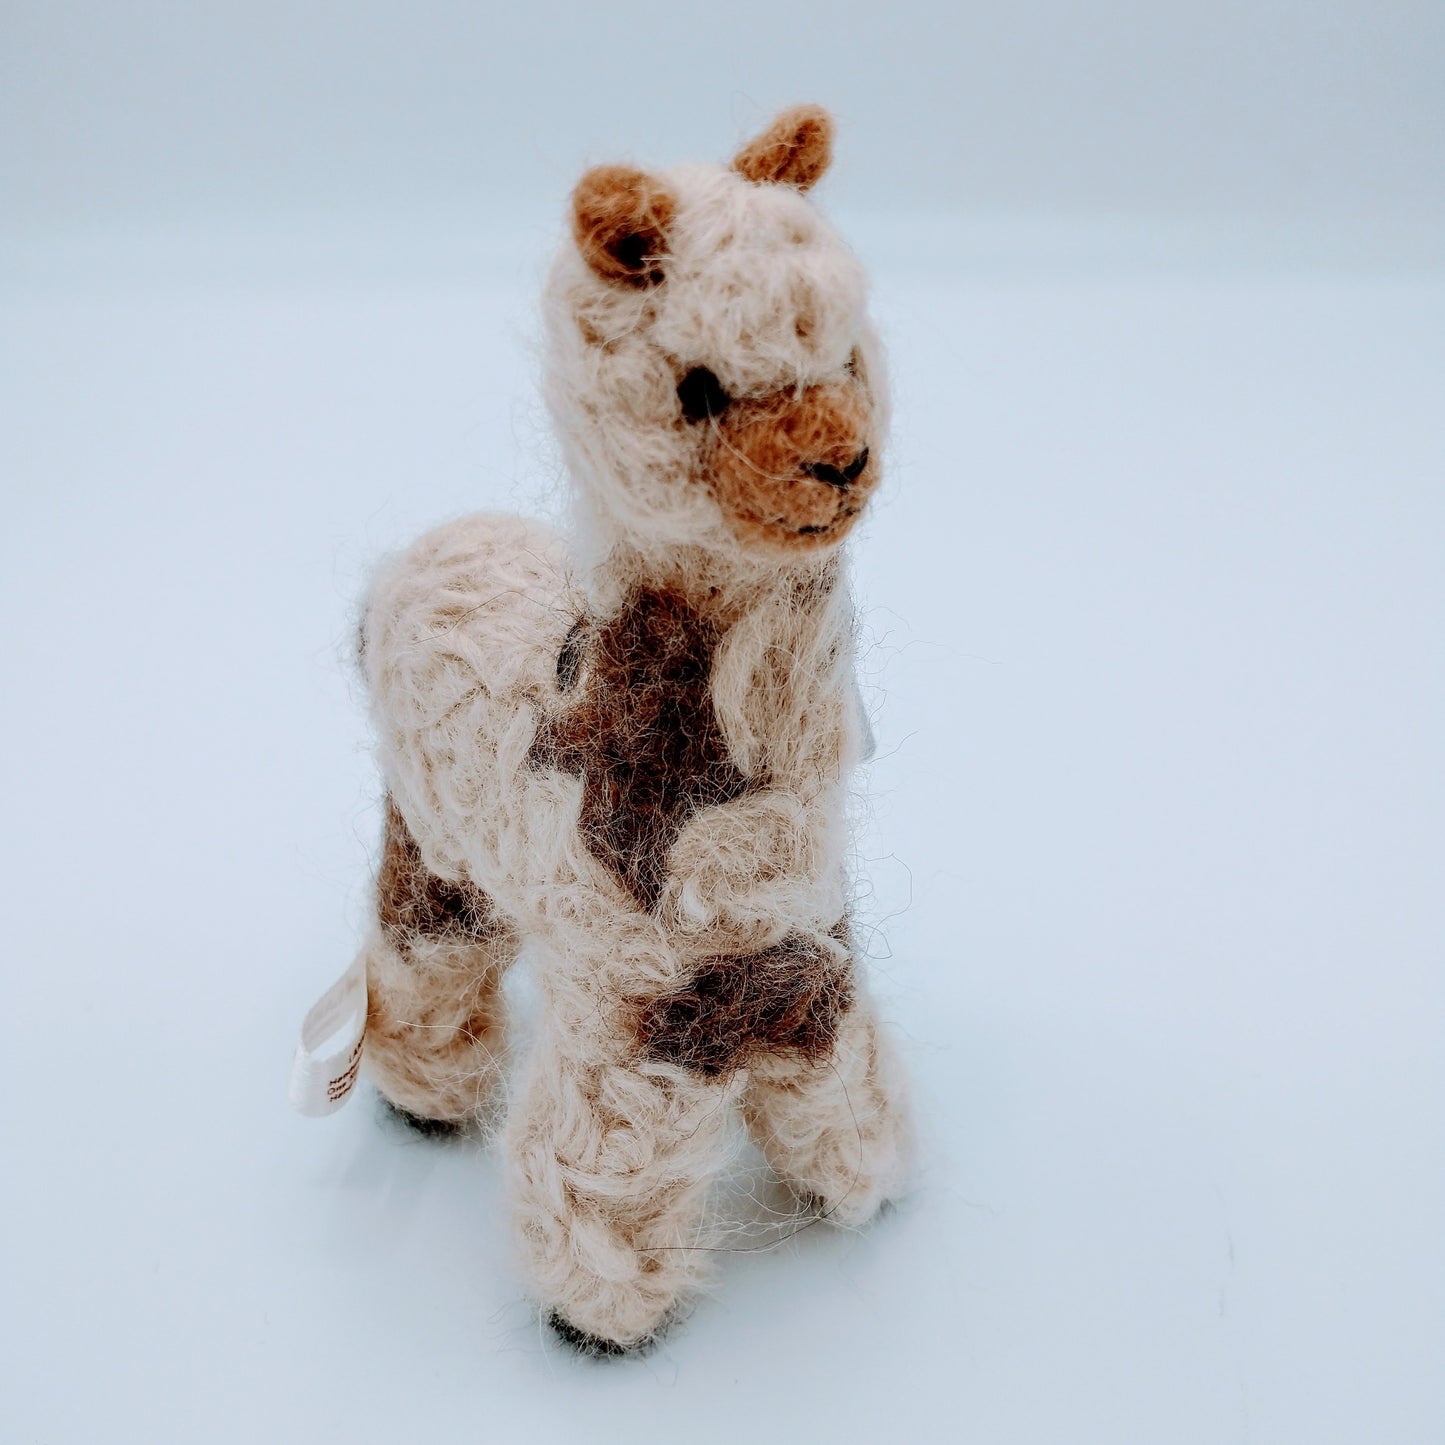 Alpaca Fiber Sculpture in two tone brown